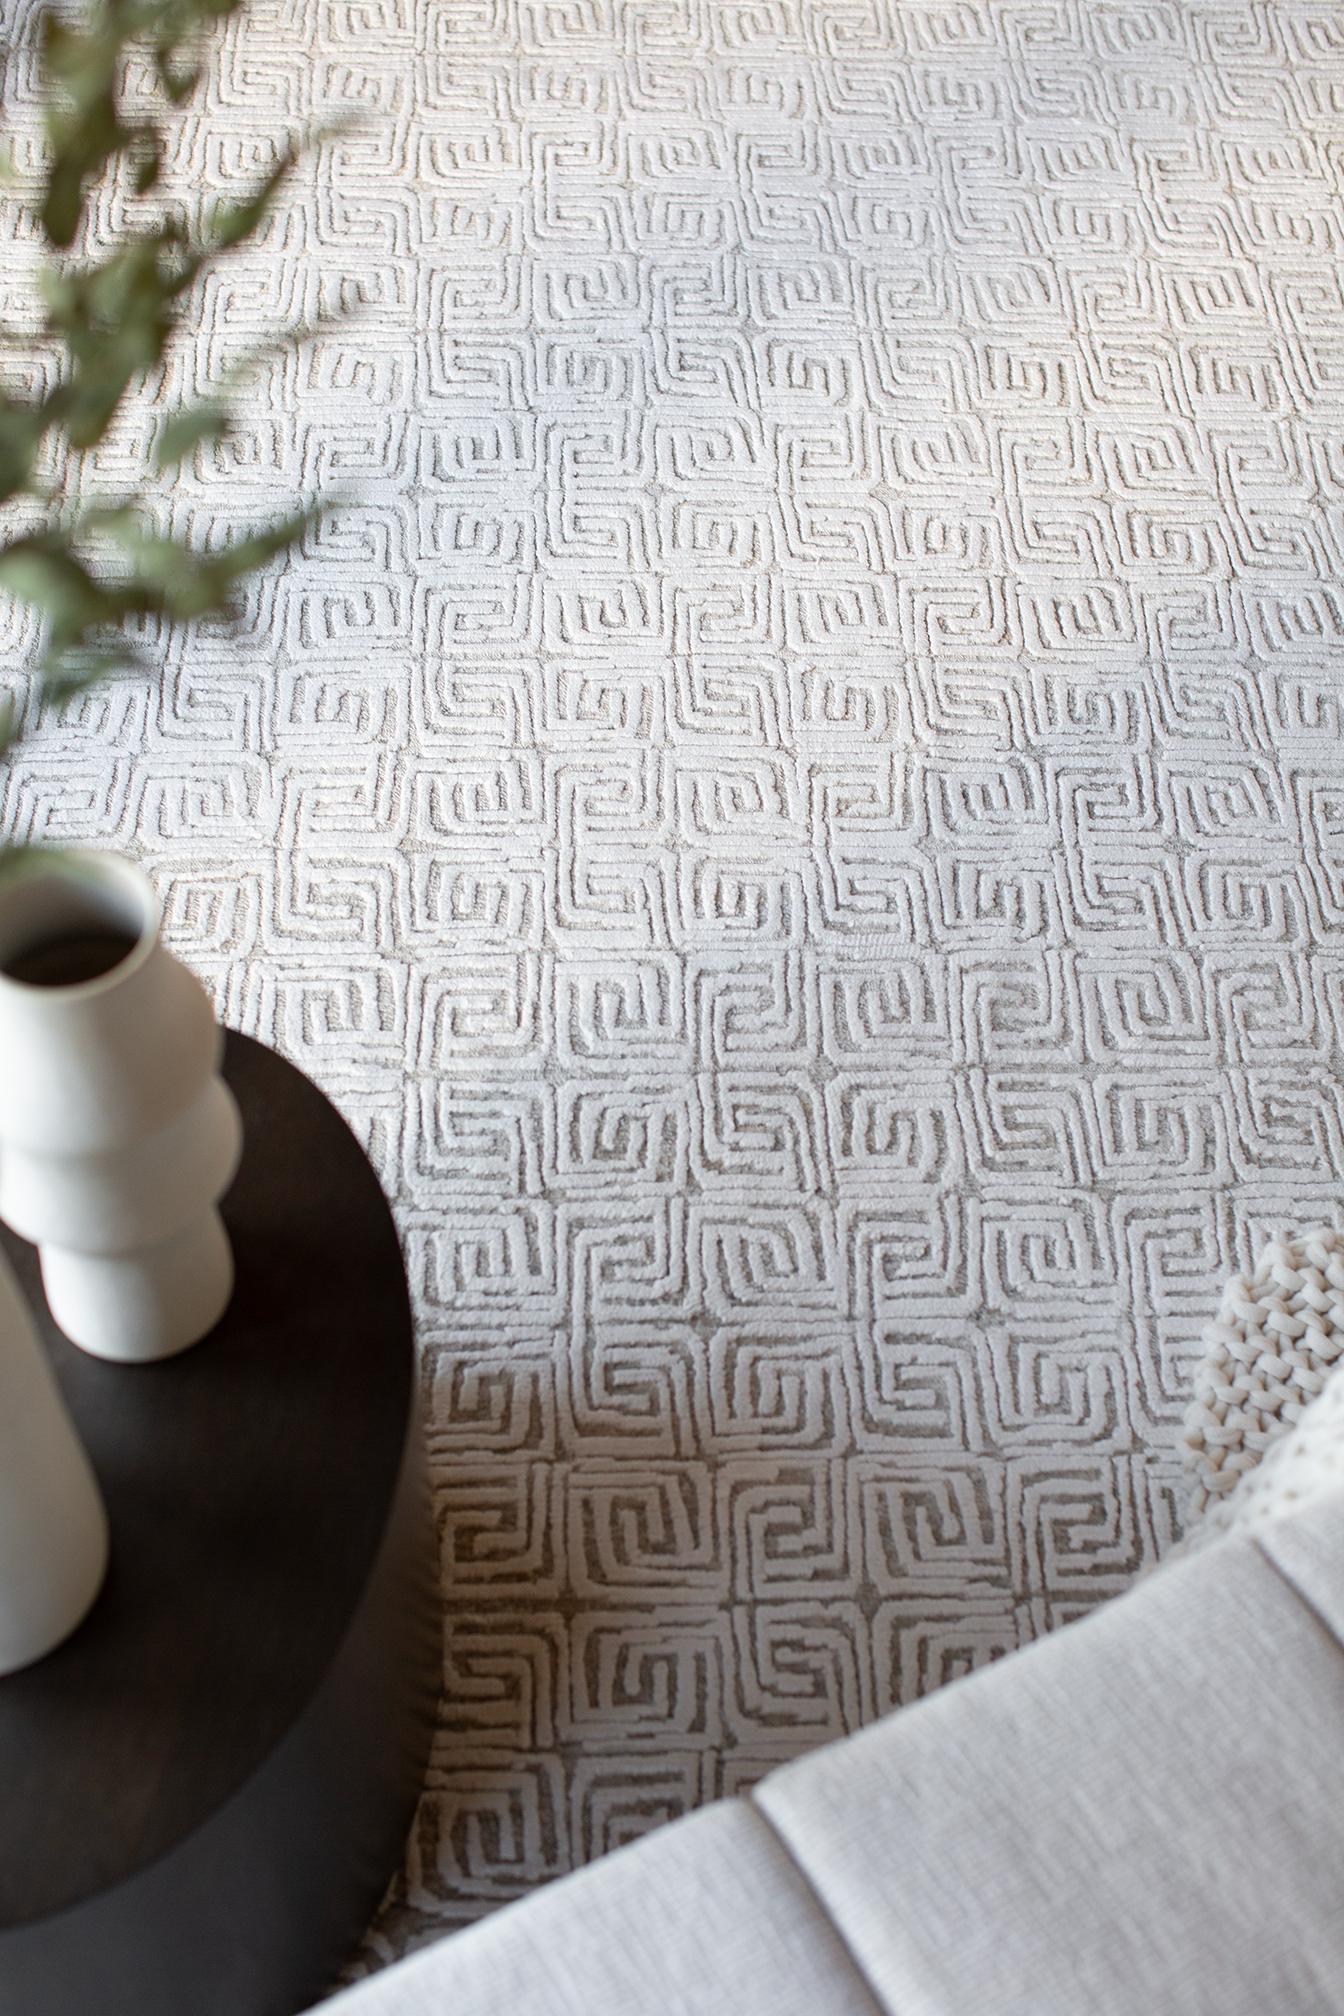 Ein kleinformatiges Labyrinth-Motiv, das lässige Textur und sauberen Flor kombiniert.
Helles, sauberes Elfenbein, gesprenkelt mit grauen Taupe-Tönen.

Teppich Nummer
30772
Größe
8' 11